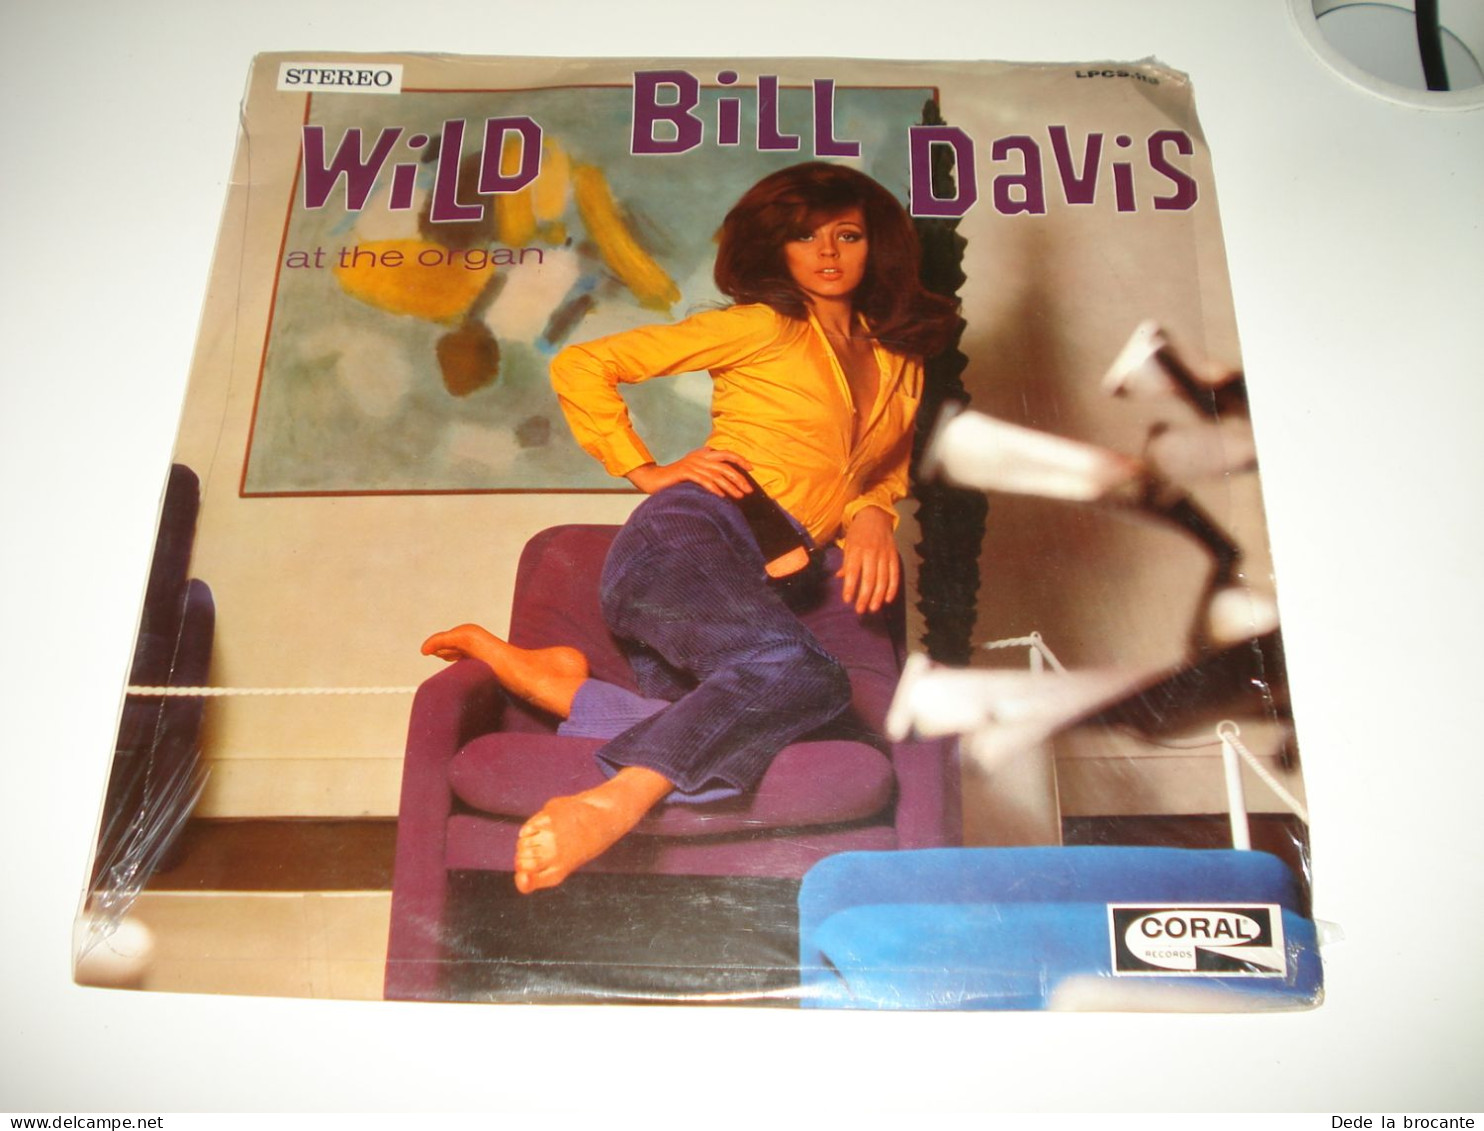 B7 / LP  Wild Bill Davis – At The Organ - Coral - LPCS.119 - France 1968 -  M/M - Jazz